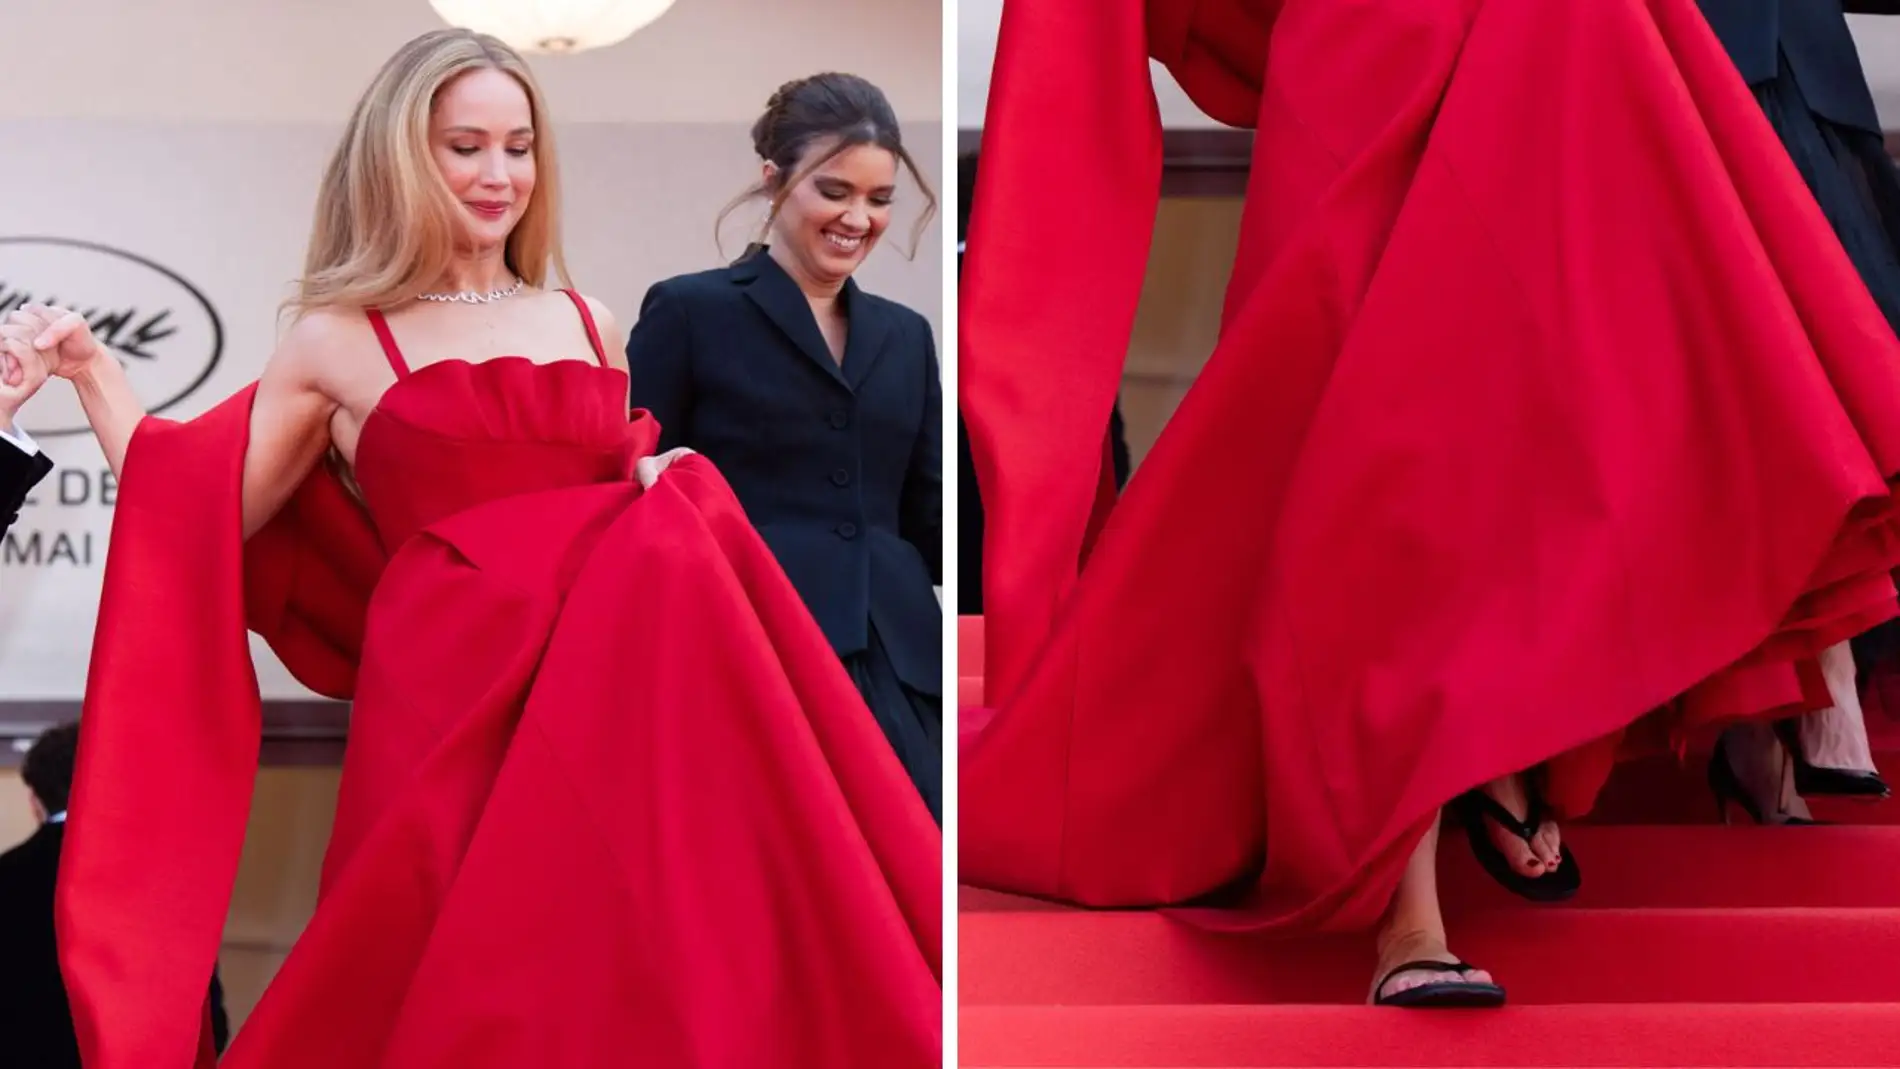 Jennifer Lawrence en Cannes